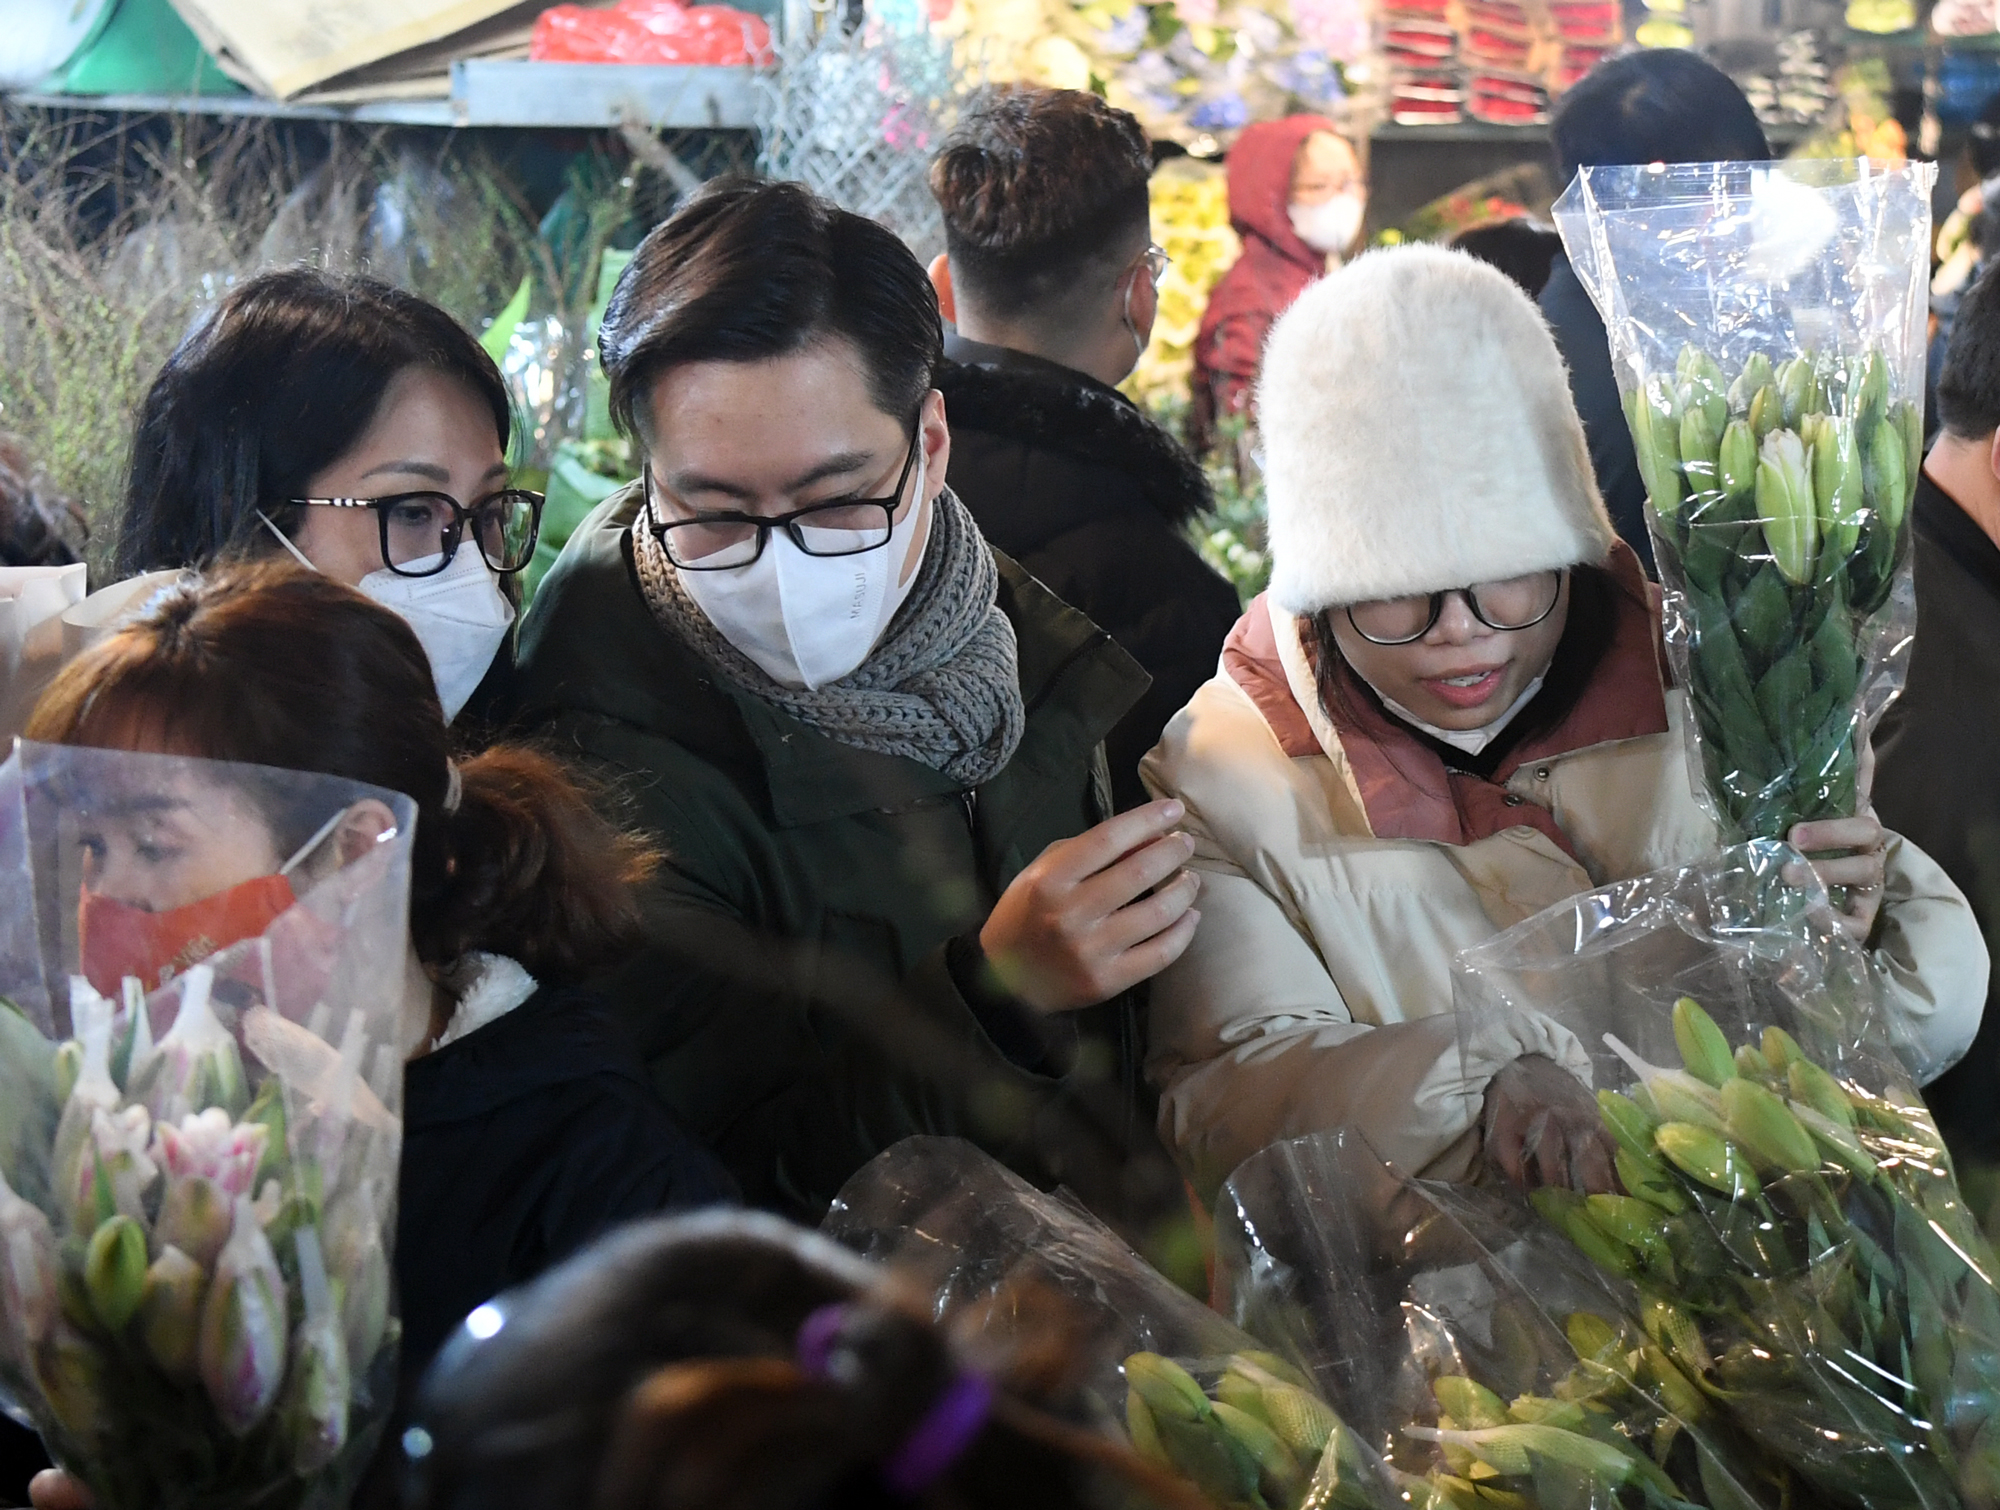 Rét buốt 13 độ C, nhiều cặp đôi tay trong tay đi sắm hoa Tết tại chợ hoa Quảng An - Ảnh 3.